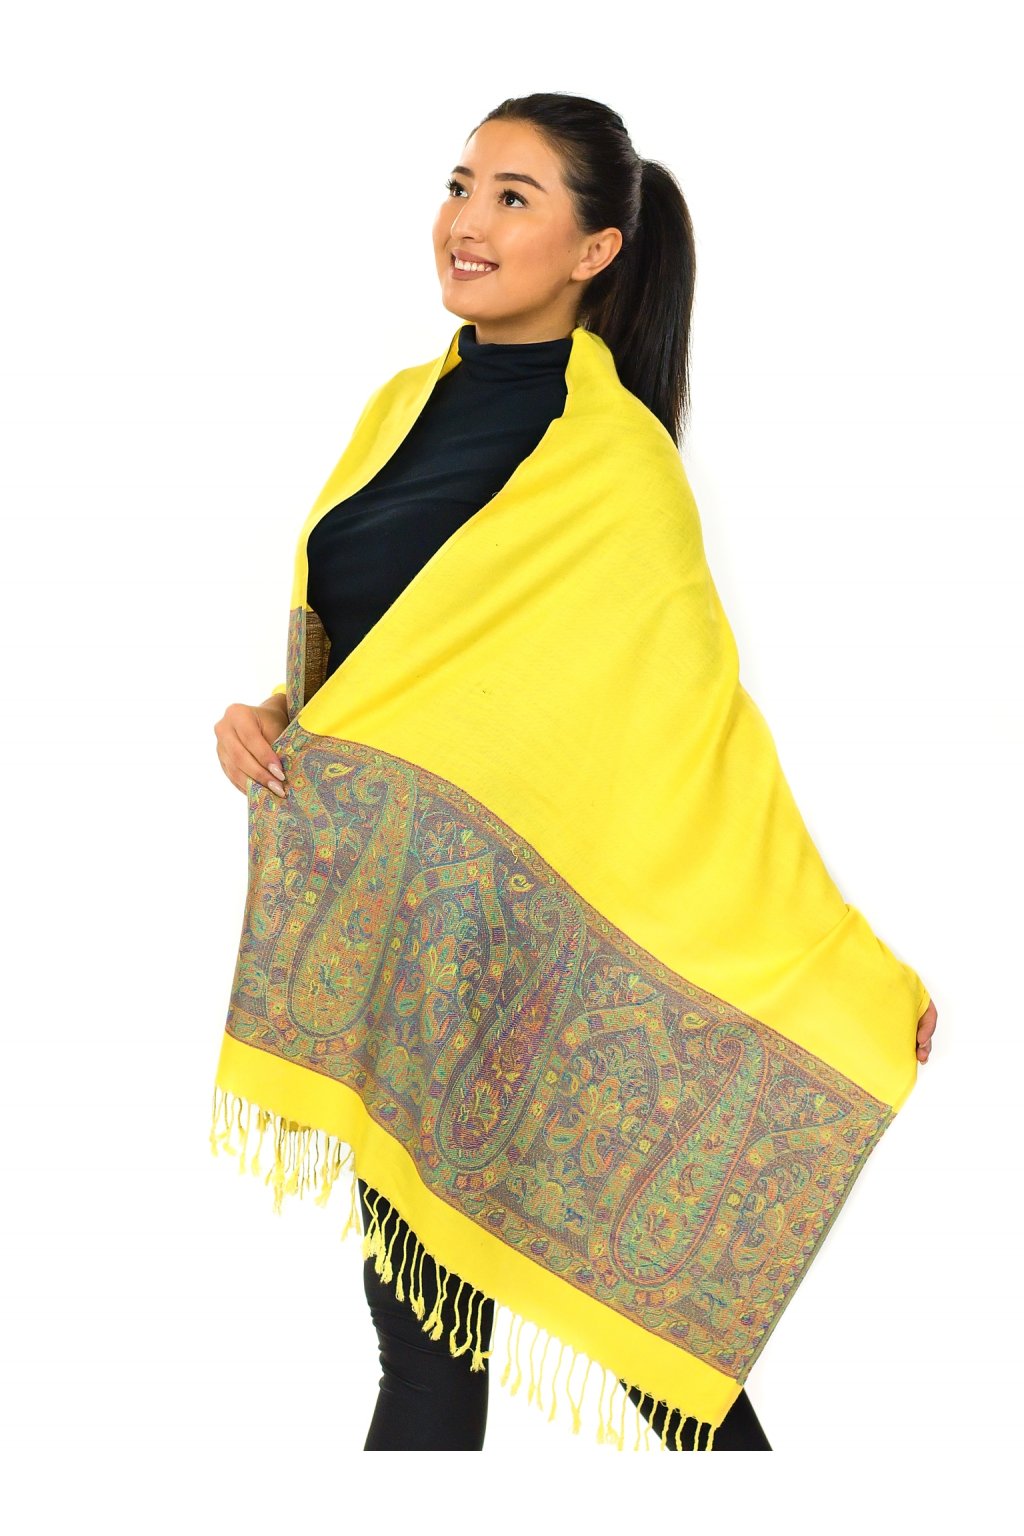 Šátek pašmína Nepal - žlutá s barvami